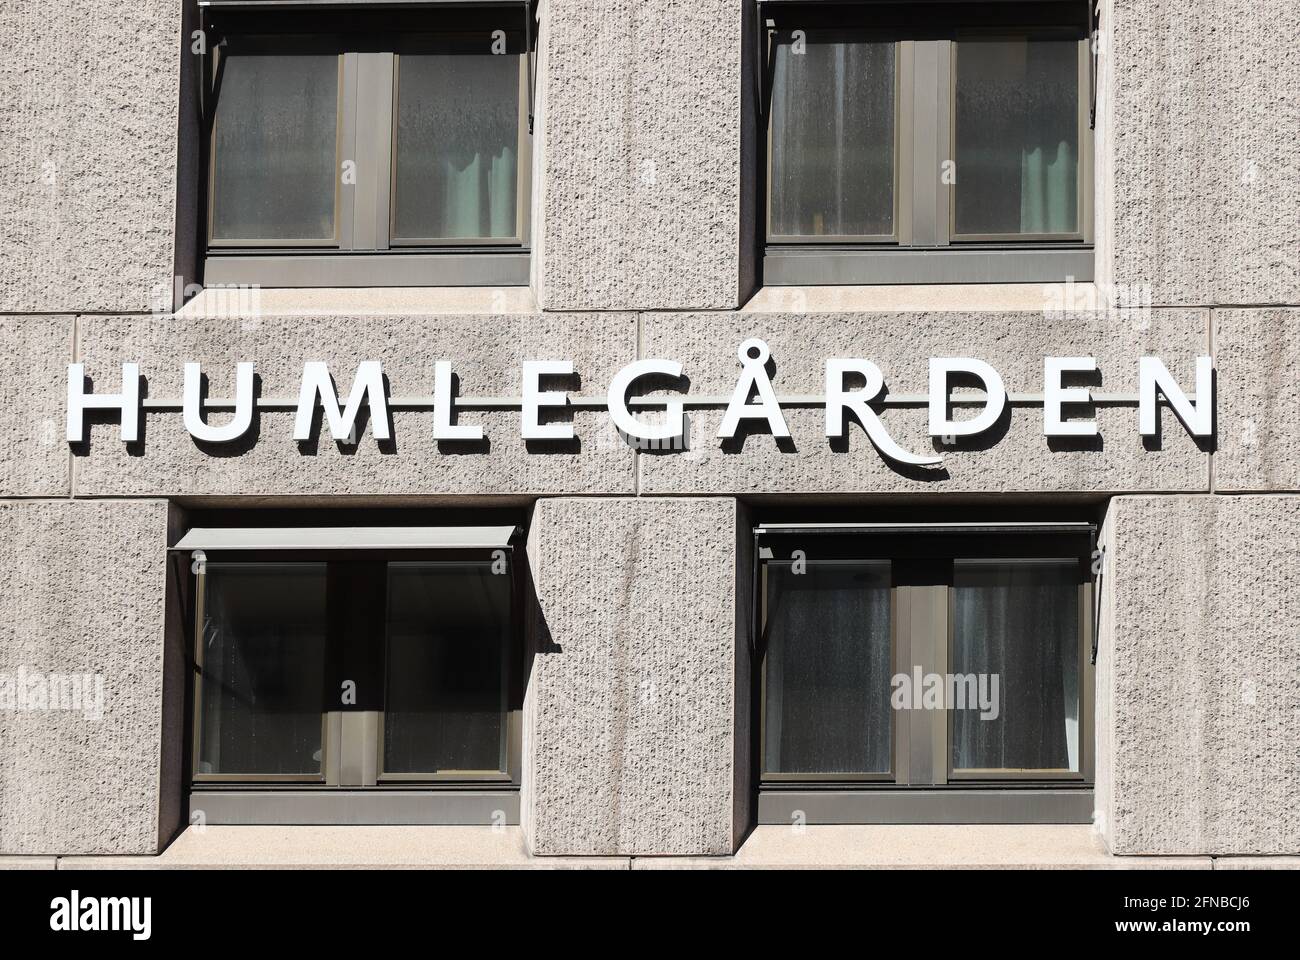 Stoccolma, Svezia - 12 maggio 2021: Il marchio di pubblicità e logotipo del proprietario della proprietà Humlegarden in via Kungsgatan. Foto Stock